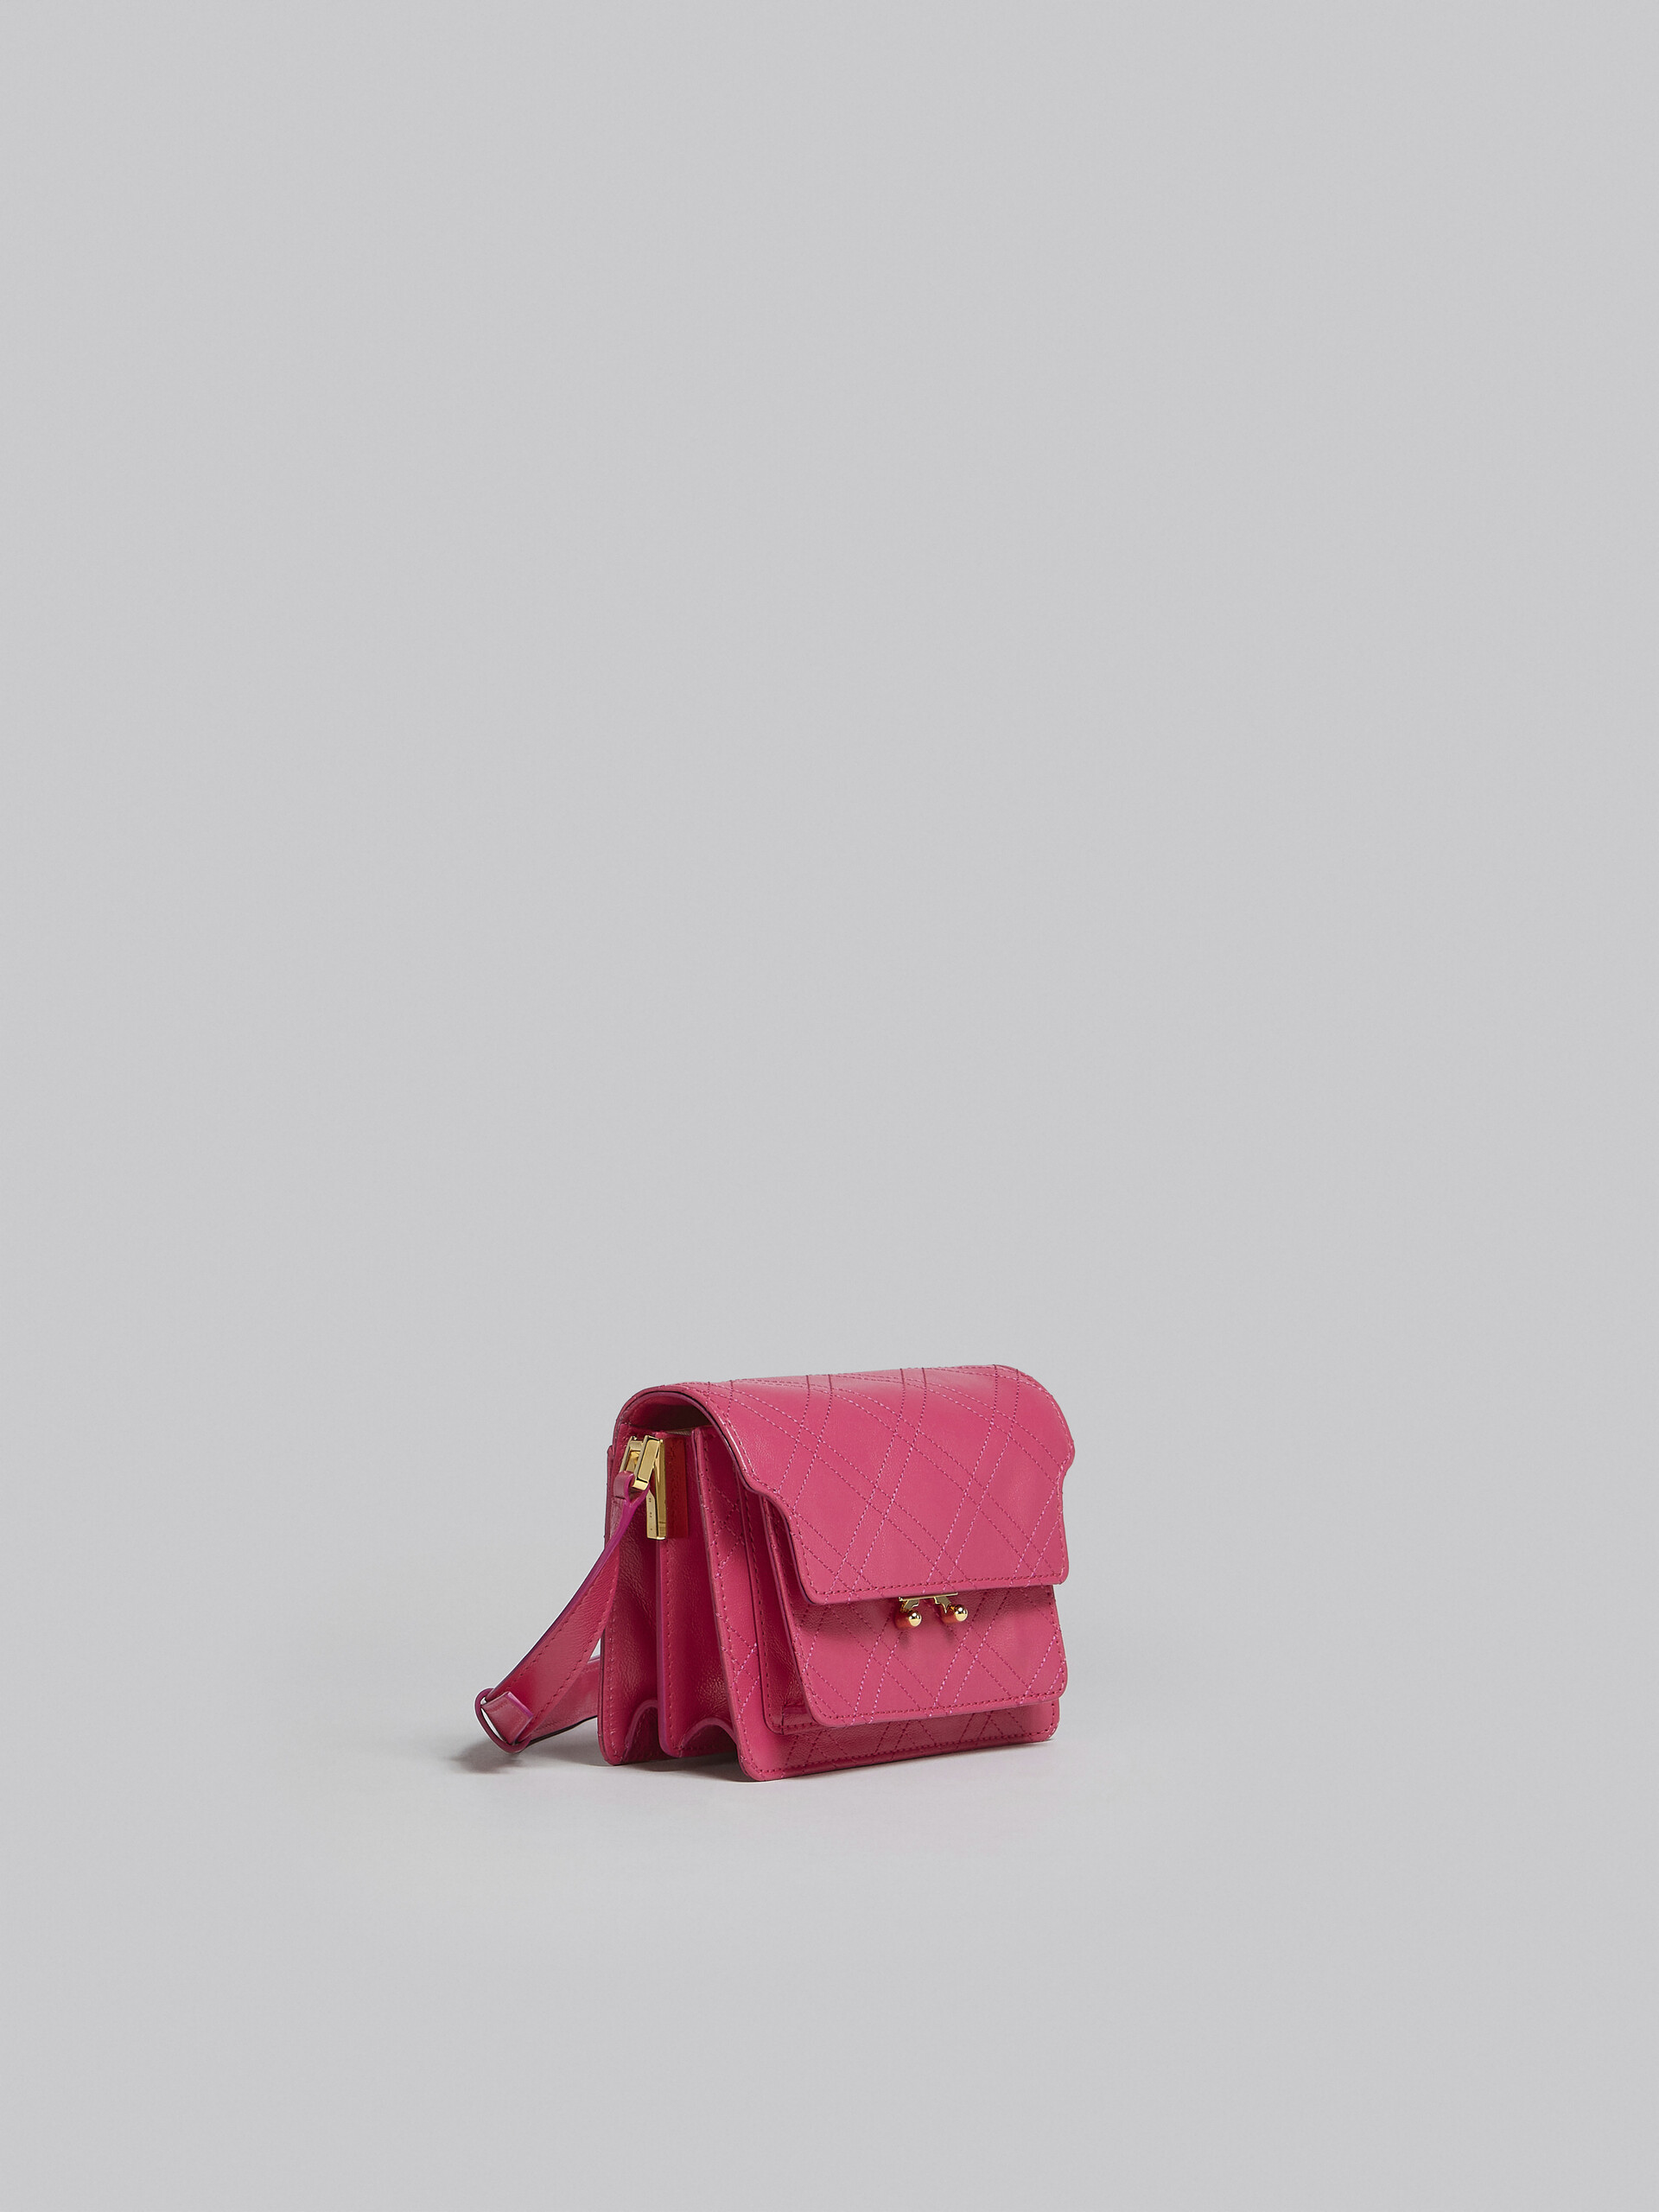 Trunk Soft Mini Bag in black leather - Shoulder Bag - Image 6